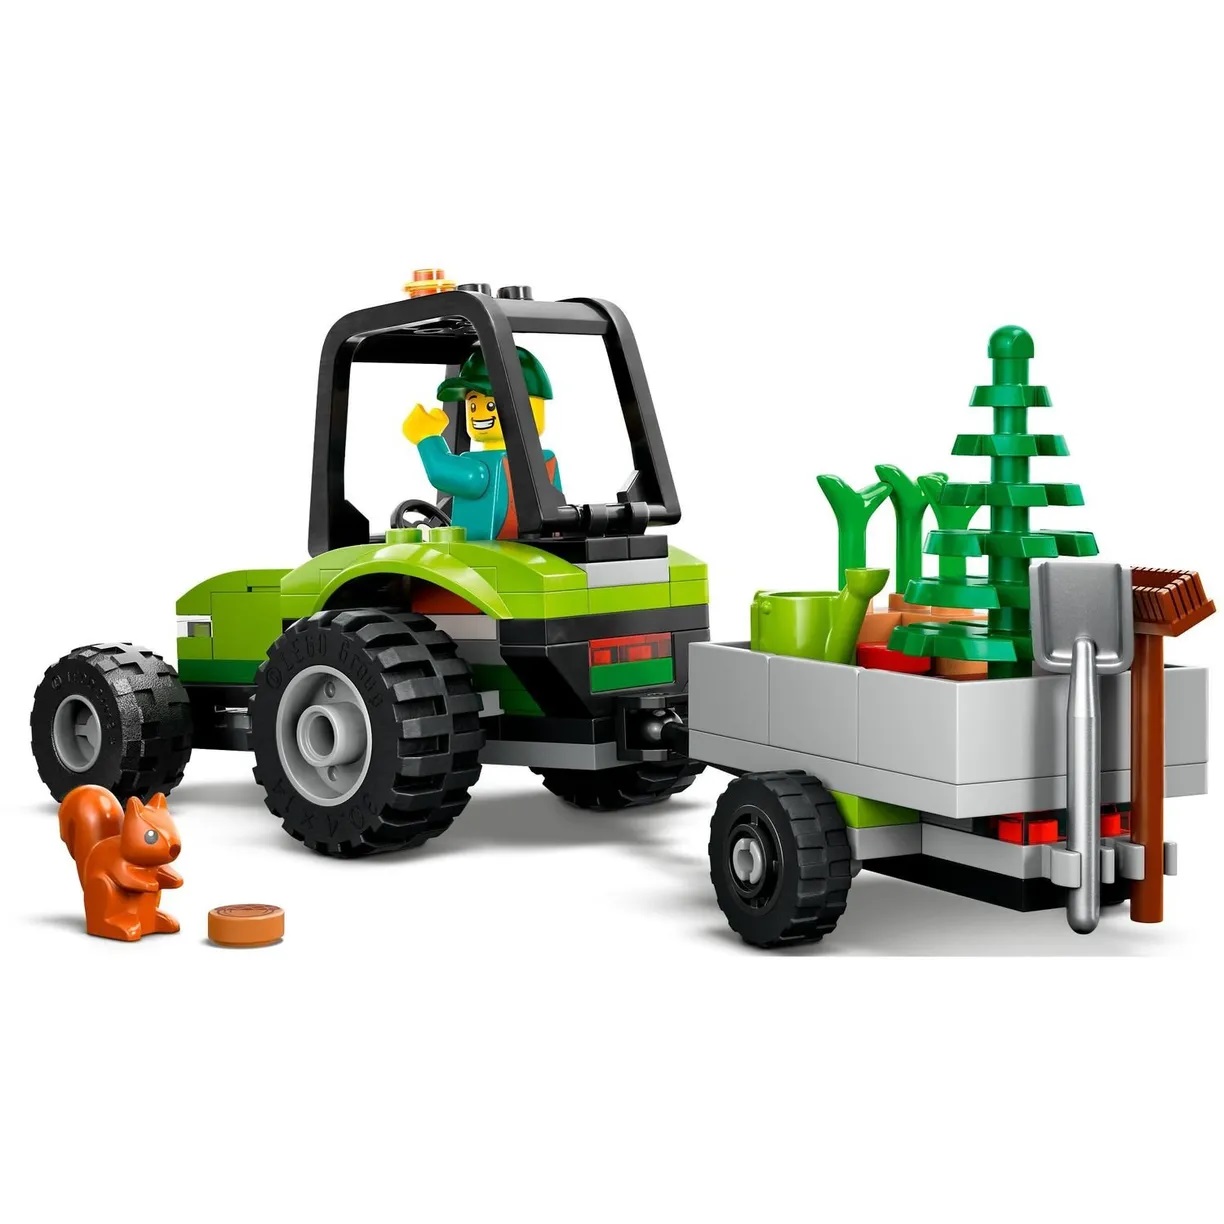 Lego City 60390 Парковый трактор